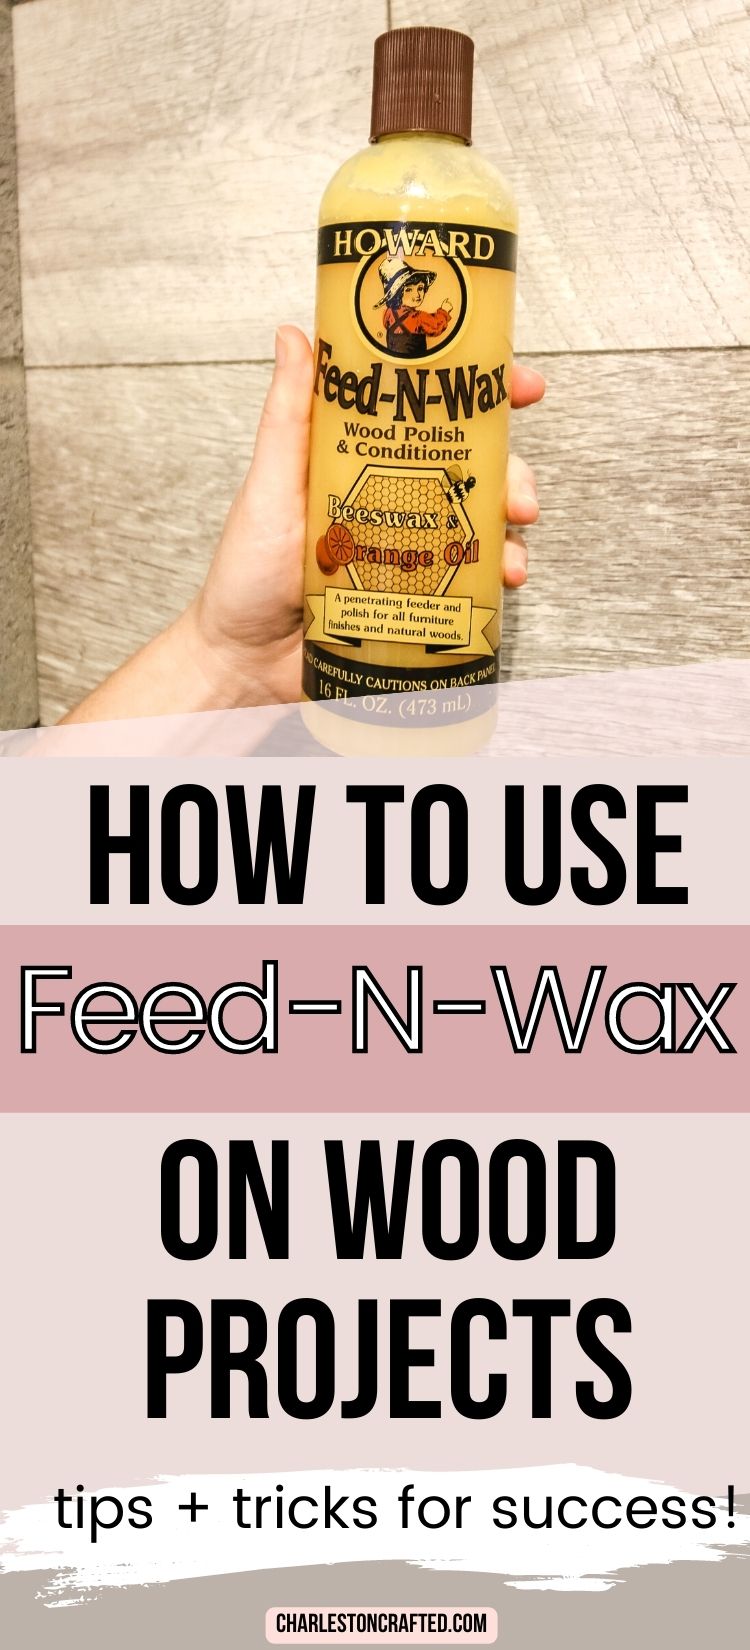 Howard - Feed-N-Wax Wood Polish and Conditioner - 16 oz